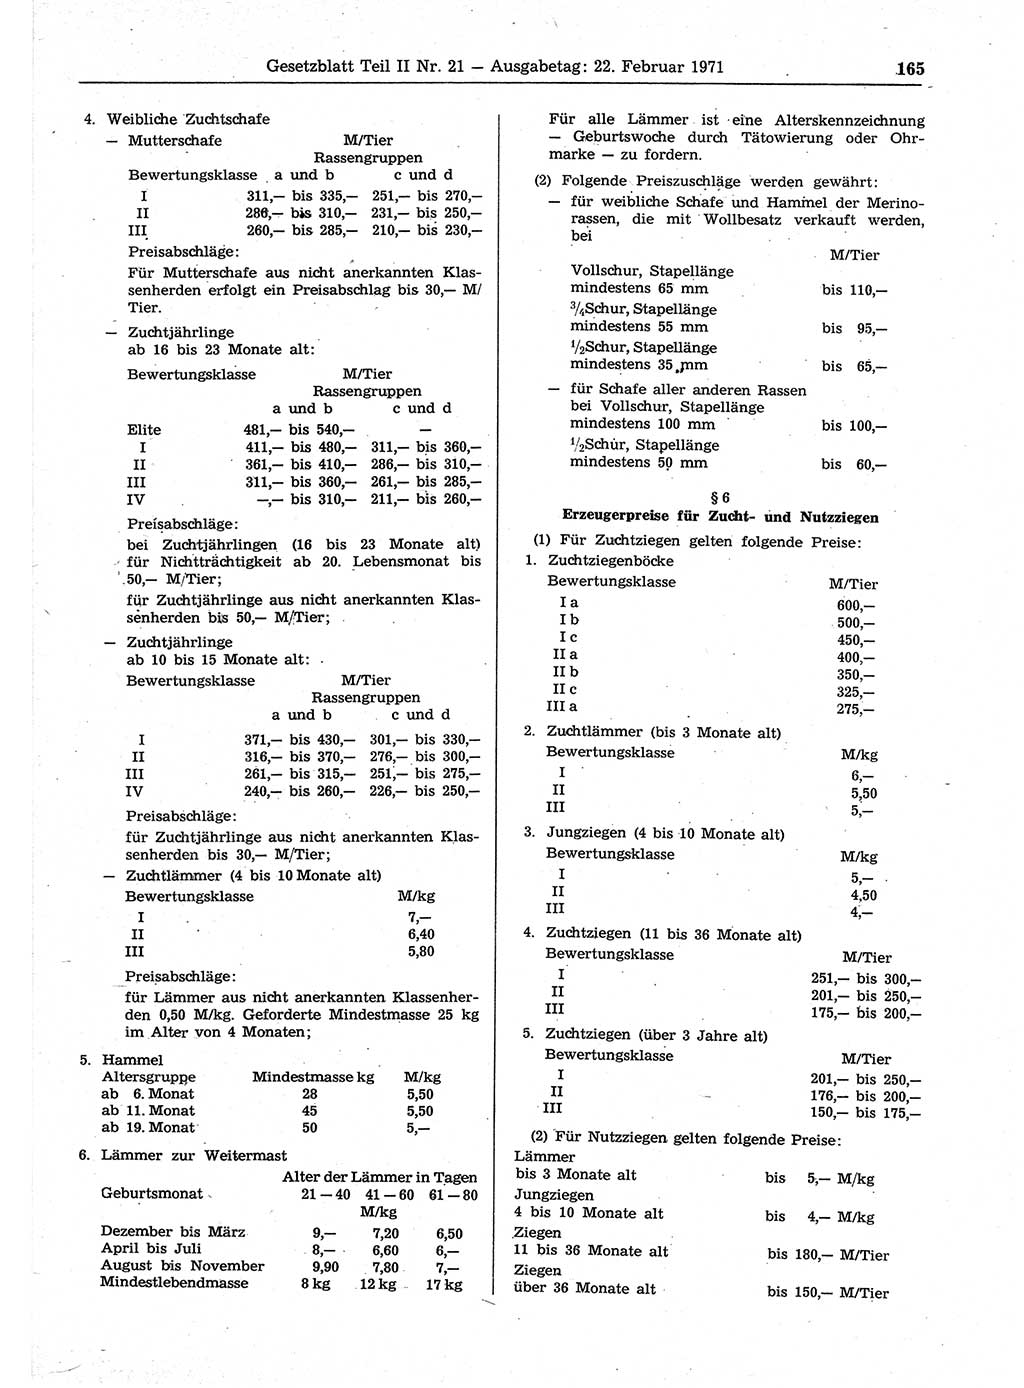 Gesetzblatt (GBl.) der Deutschen Demokratischen Republik (DDR) Teil ⅠⅠ 1971, Seite 165 (GBl. DDR ⅠⅠ 1971, S. 165)